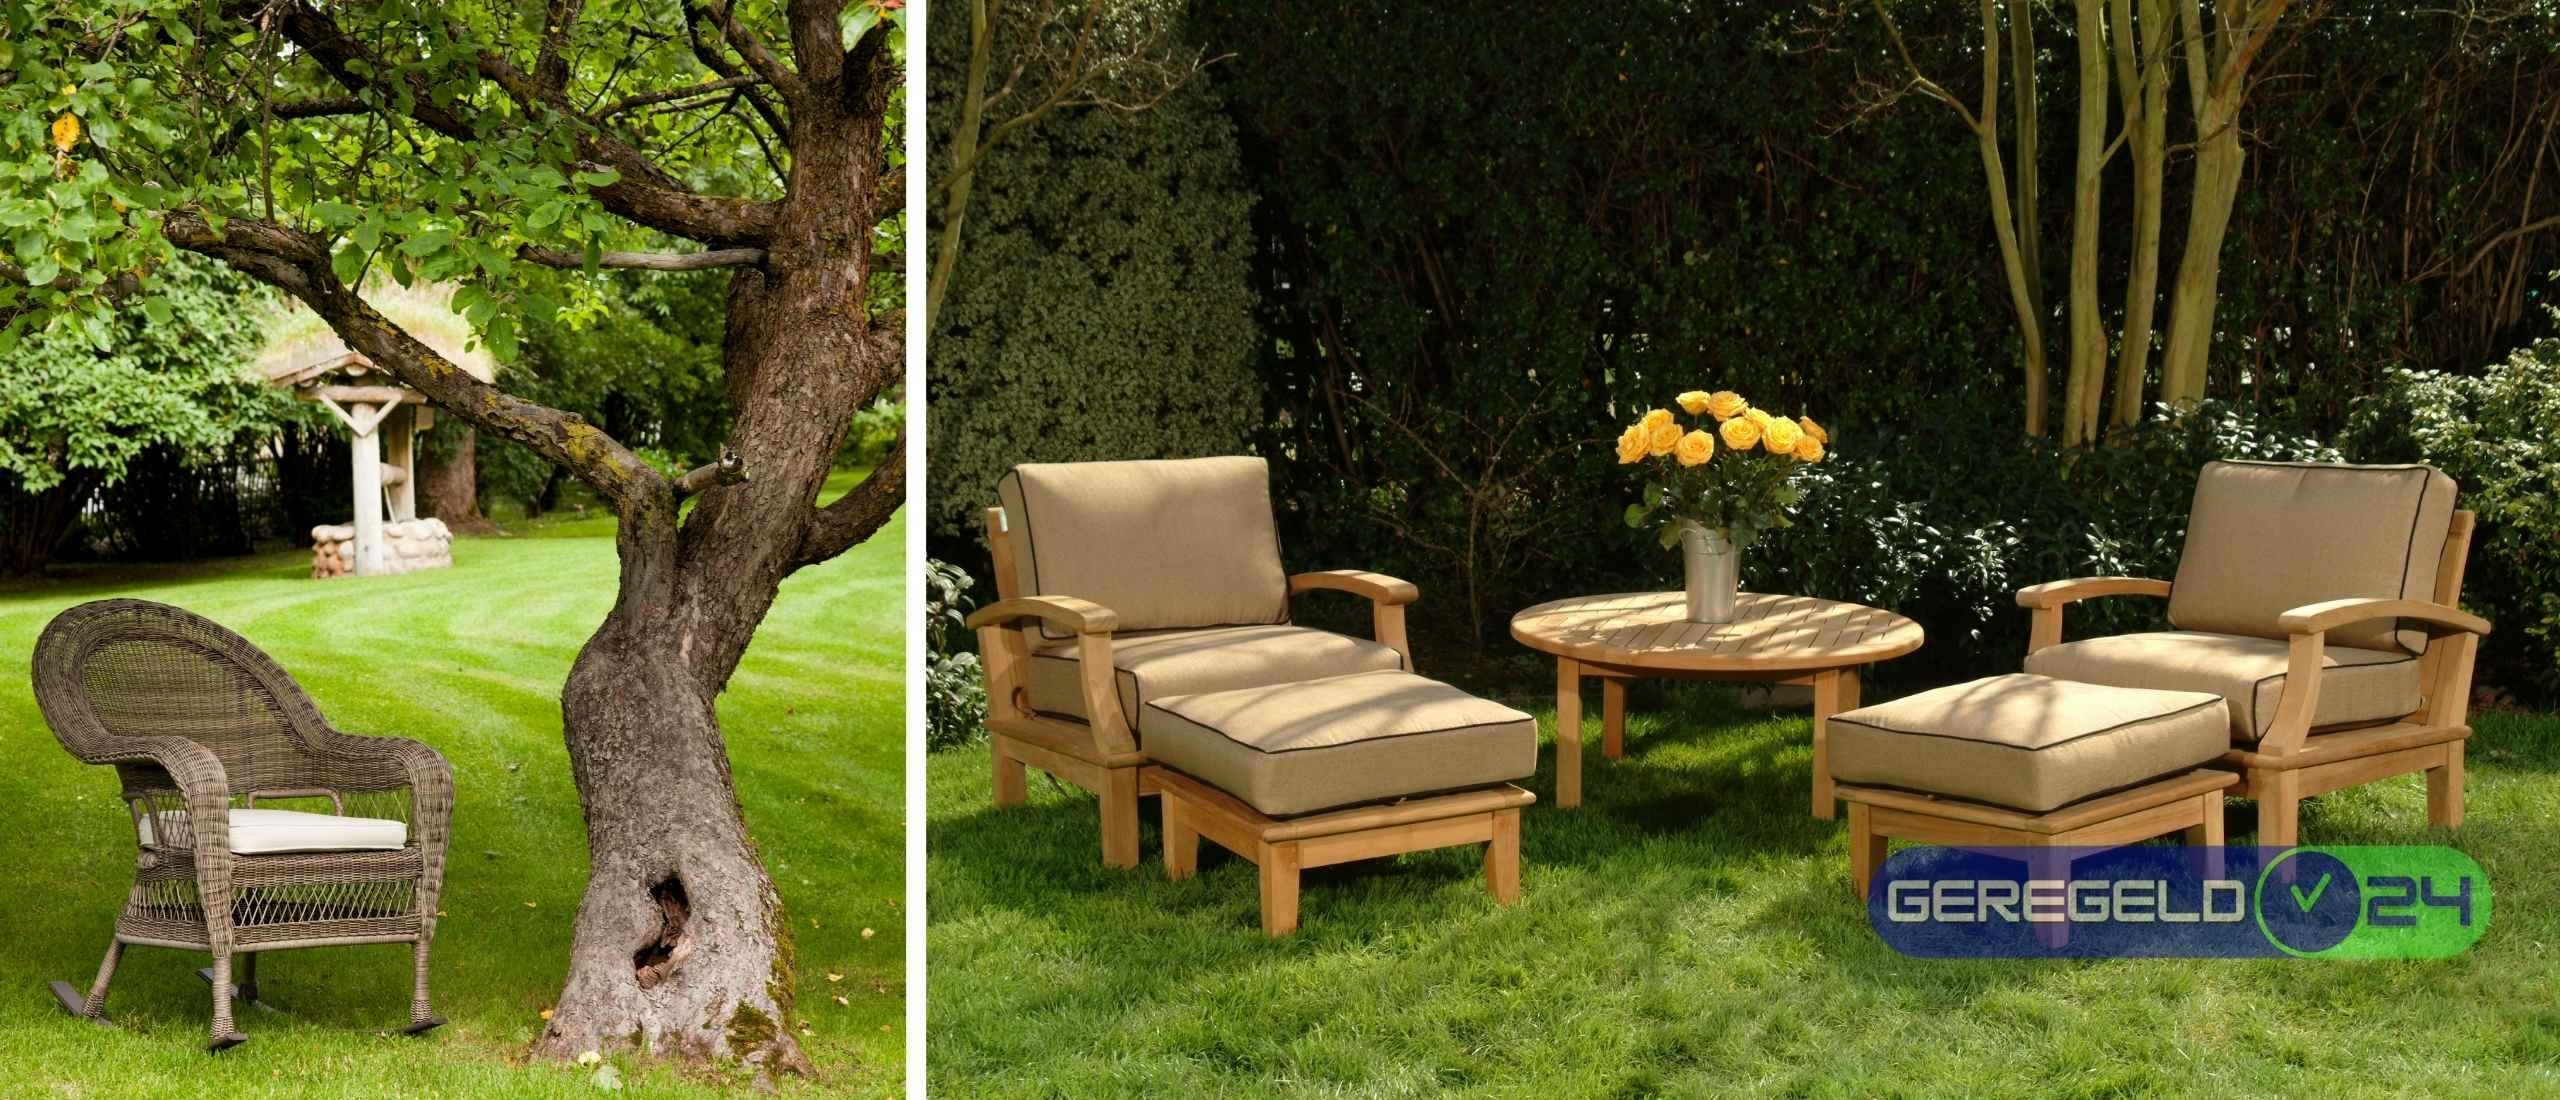 Hoe kies je de perfecte tuinstoelen voor ontspanning en stijl?